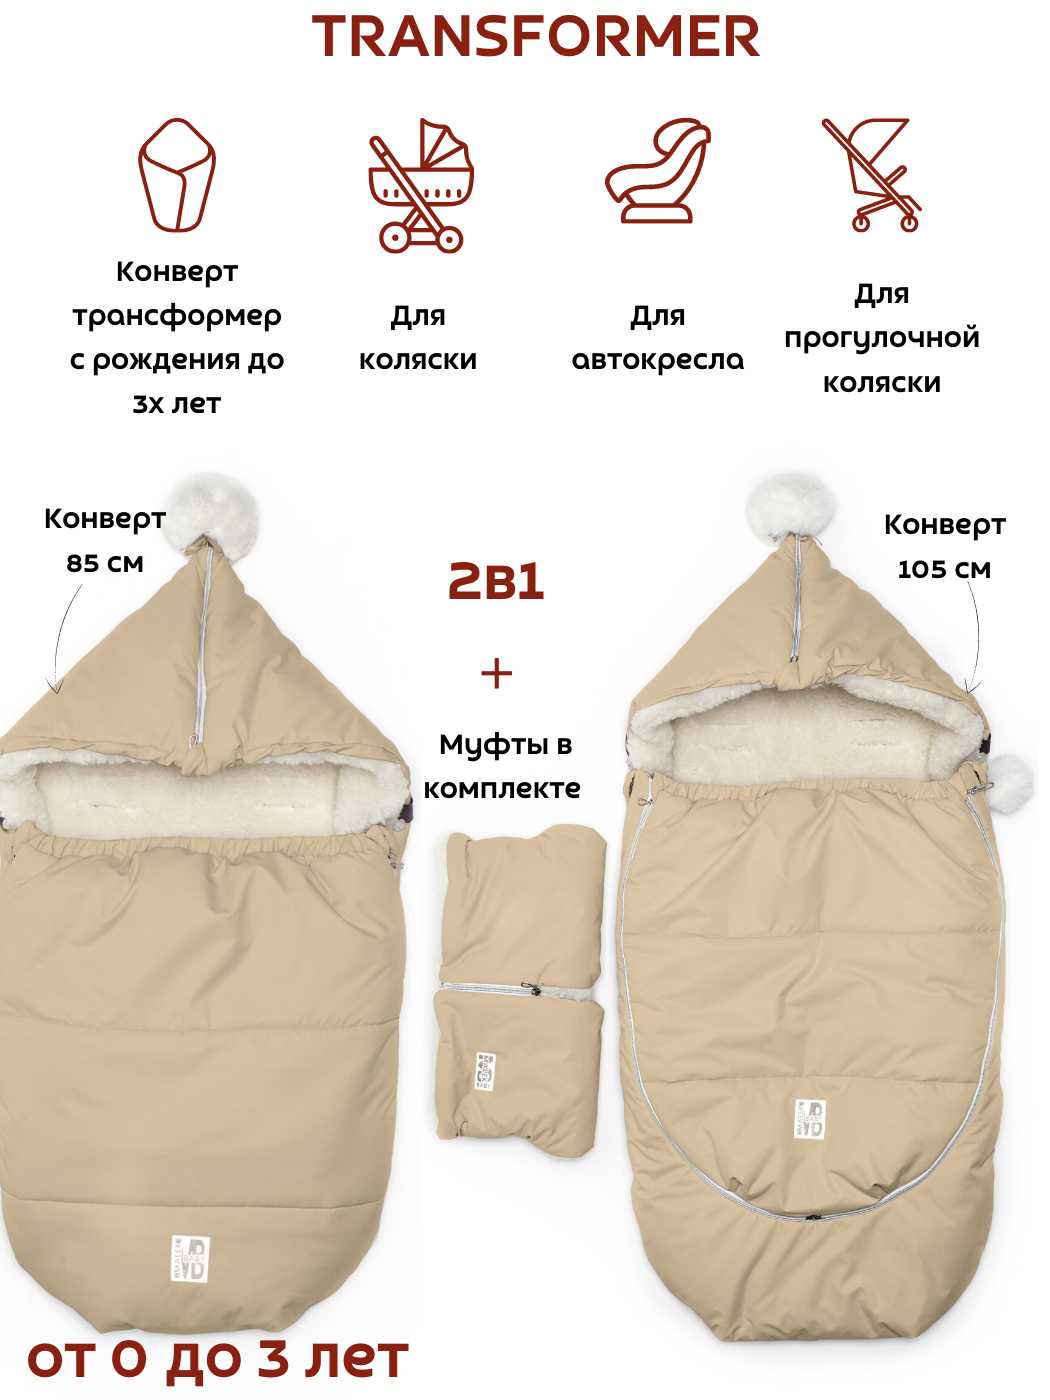 Комплект (Конкерт муфта) - Производитель детской одежды МаЛеК-БэБи